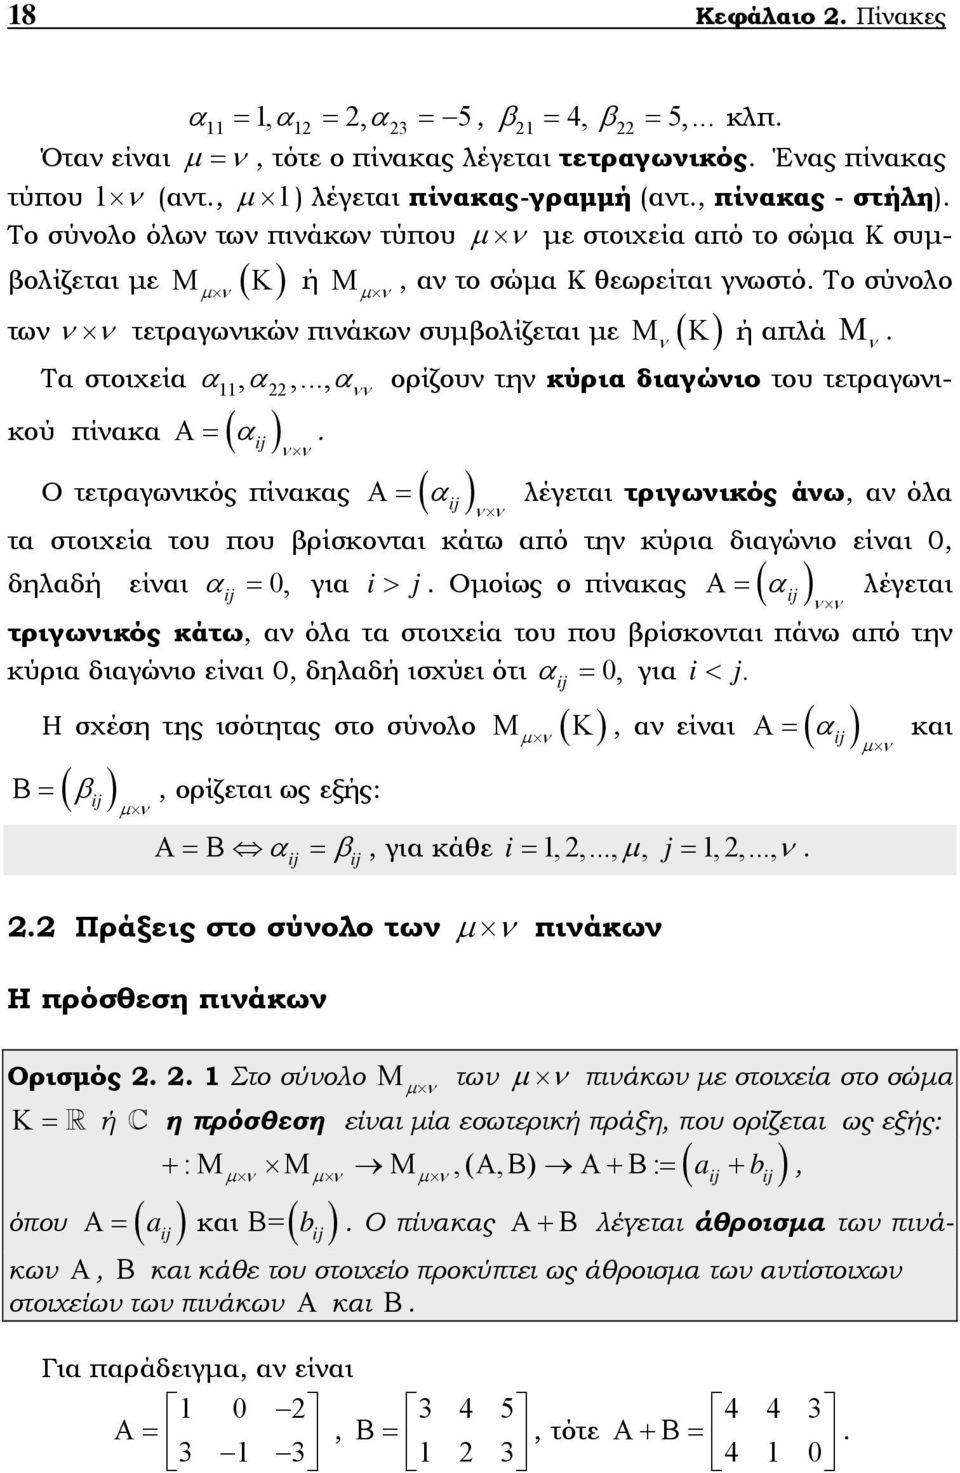 τετραγωικού πίακα Α= ( α Ο τετραγωικός πίακας ( α Α= λέγεται τριγωικός άω, α όλα τα στοιχεία του που βρίσκοται κάτω από τη κύρια διαγώιο είαι 0, δηλαδή είαι α = 0, για i j Α= α λέγεται > Οοίως ο